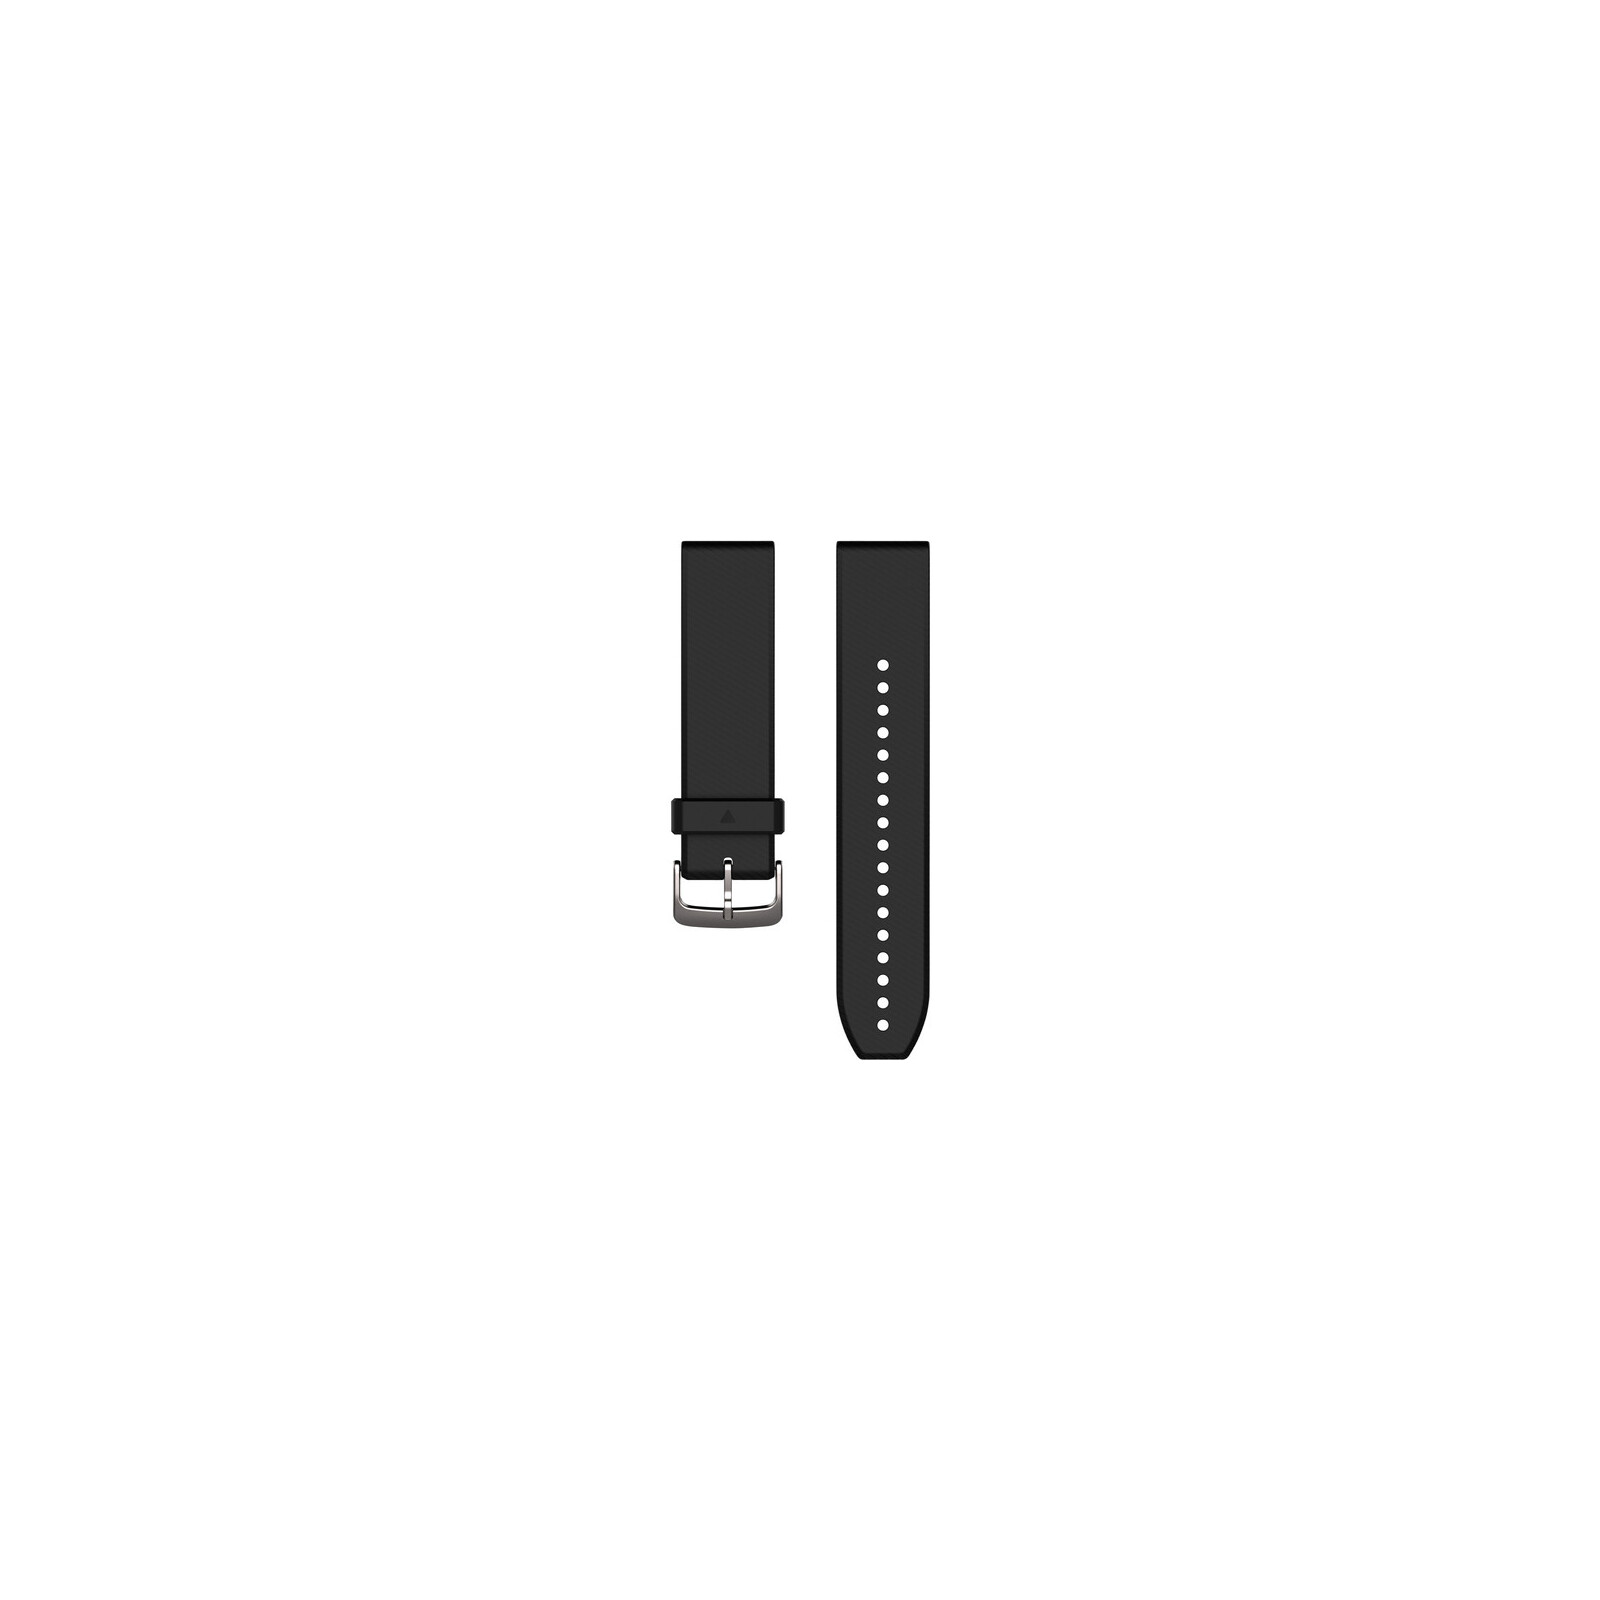 Garmin QuickFit 22 Band Silikon schwarz/silber